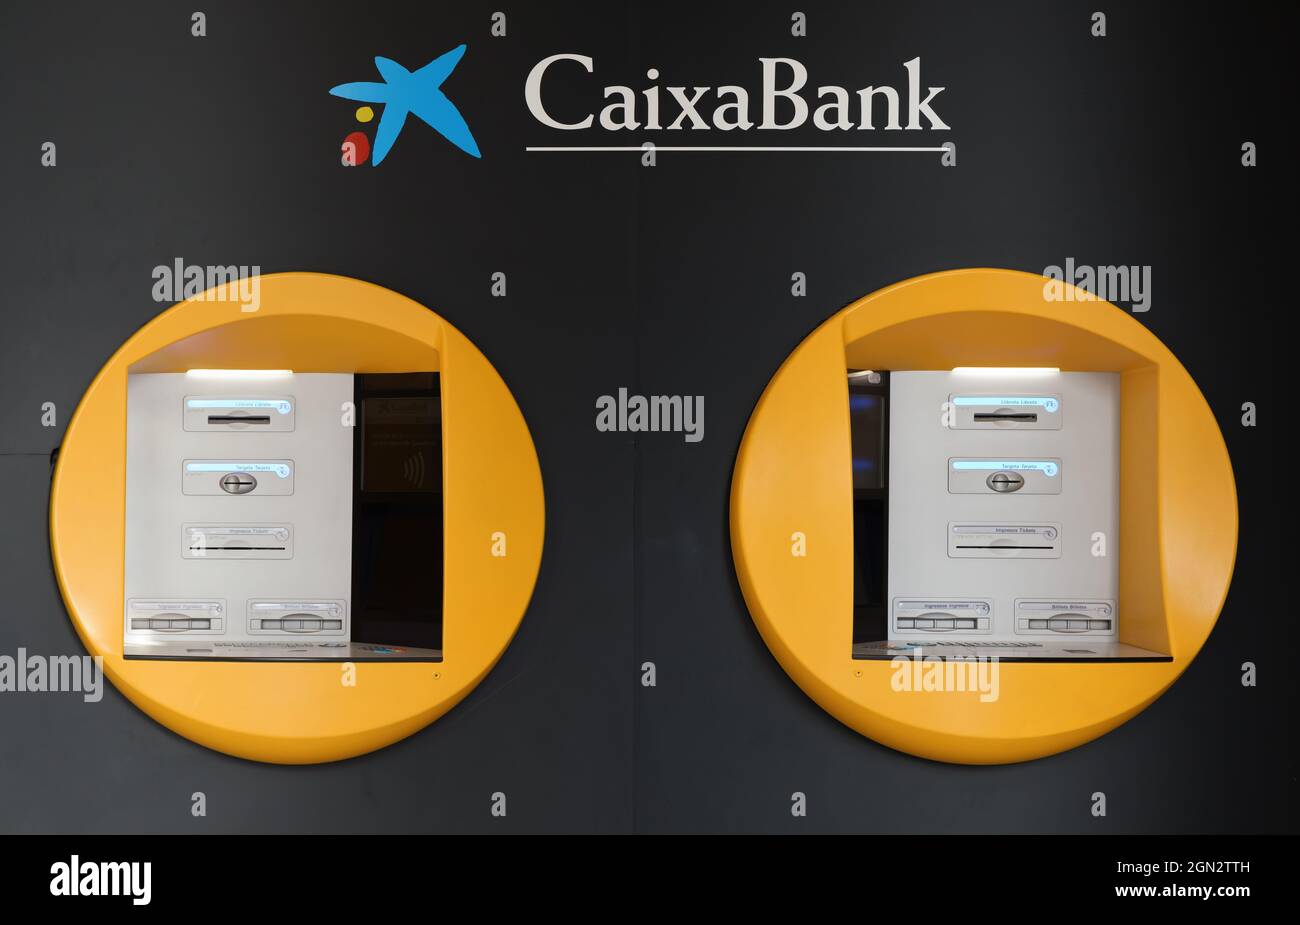 VALENCIA, SPANIEN - 21. SEPTEMBER 2021: Die CaixaBank ist eine spanische Bank mit Sitz in Valencia. Es ist eines der wichtigsten Finanzinstitute in diesem CO Stockfoto